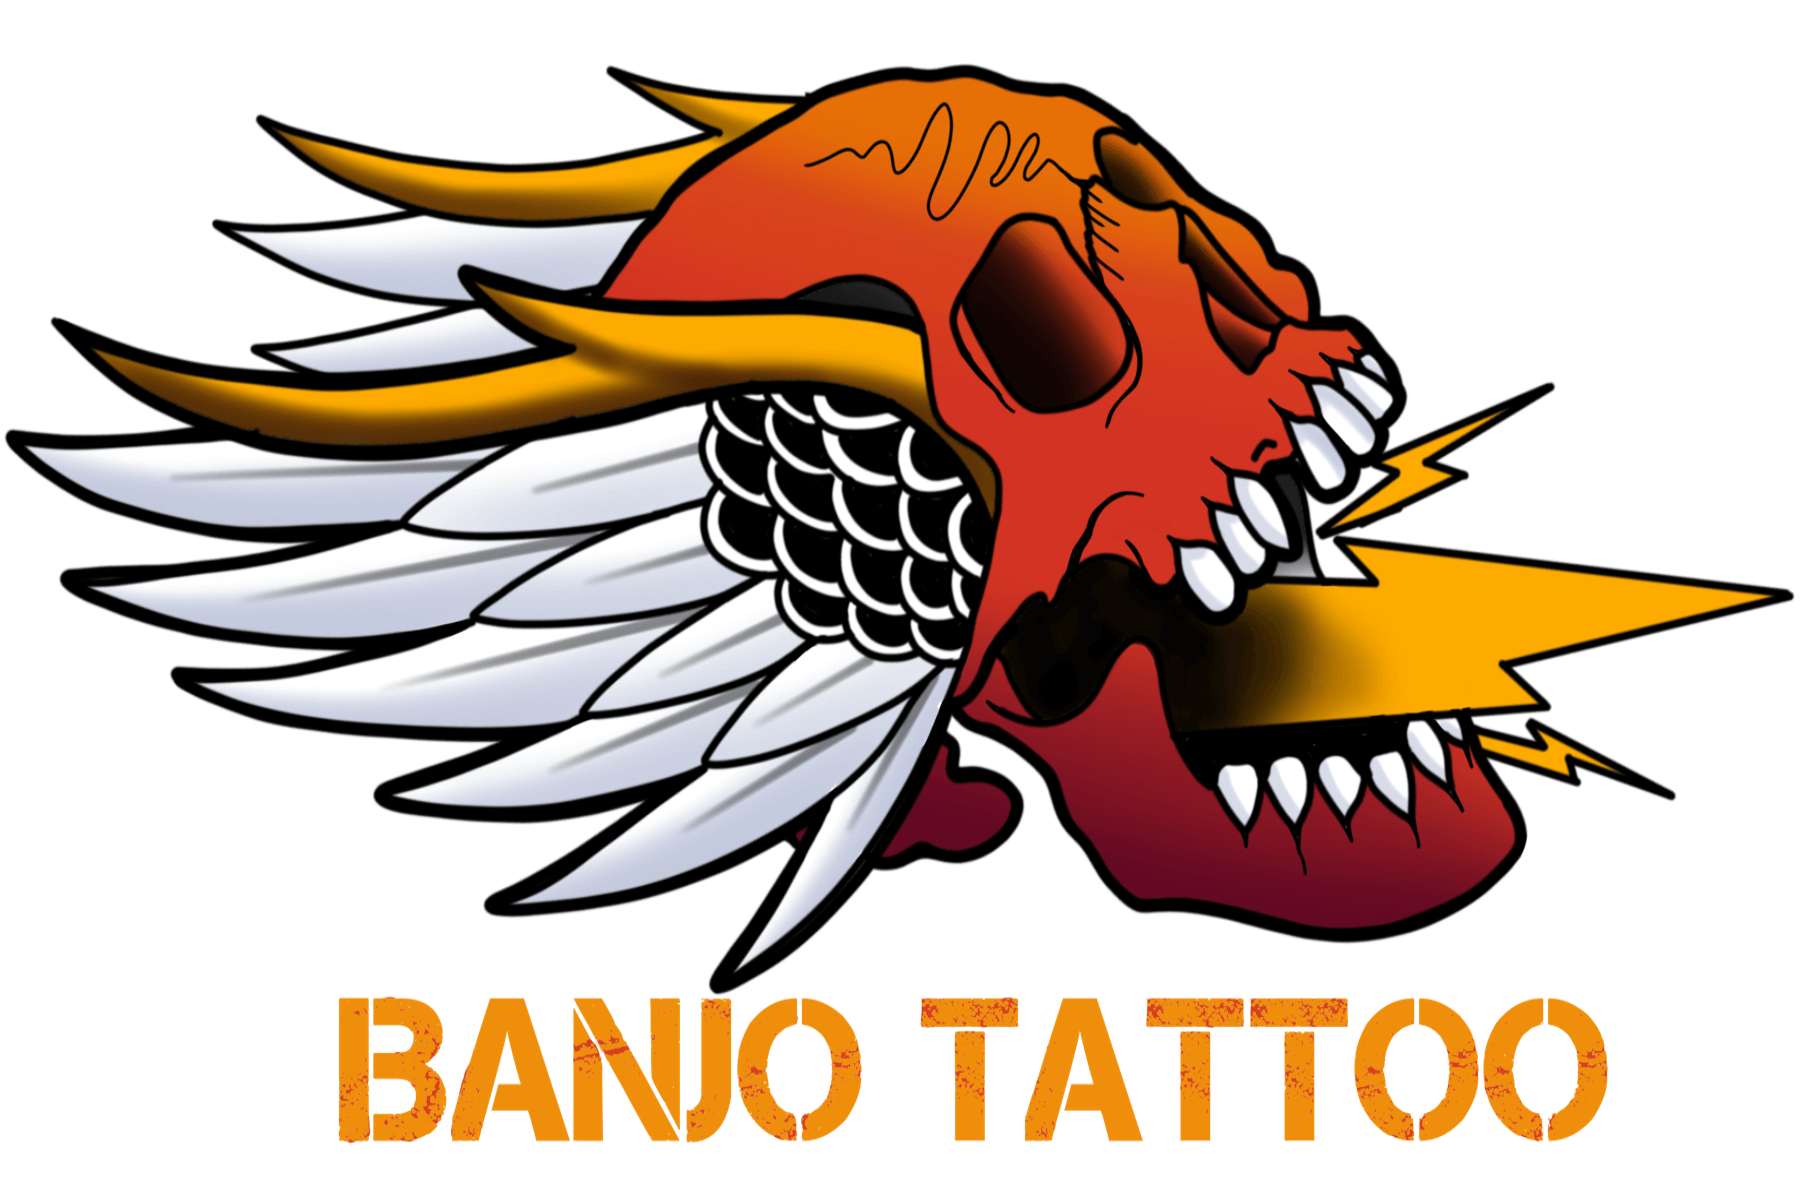 Banjo Tattoo